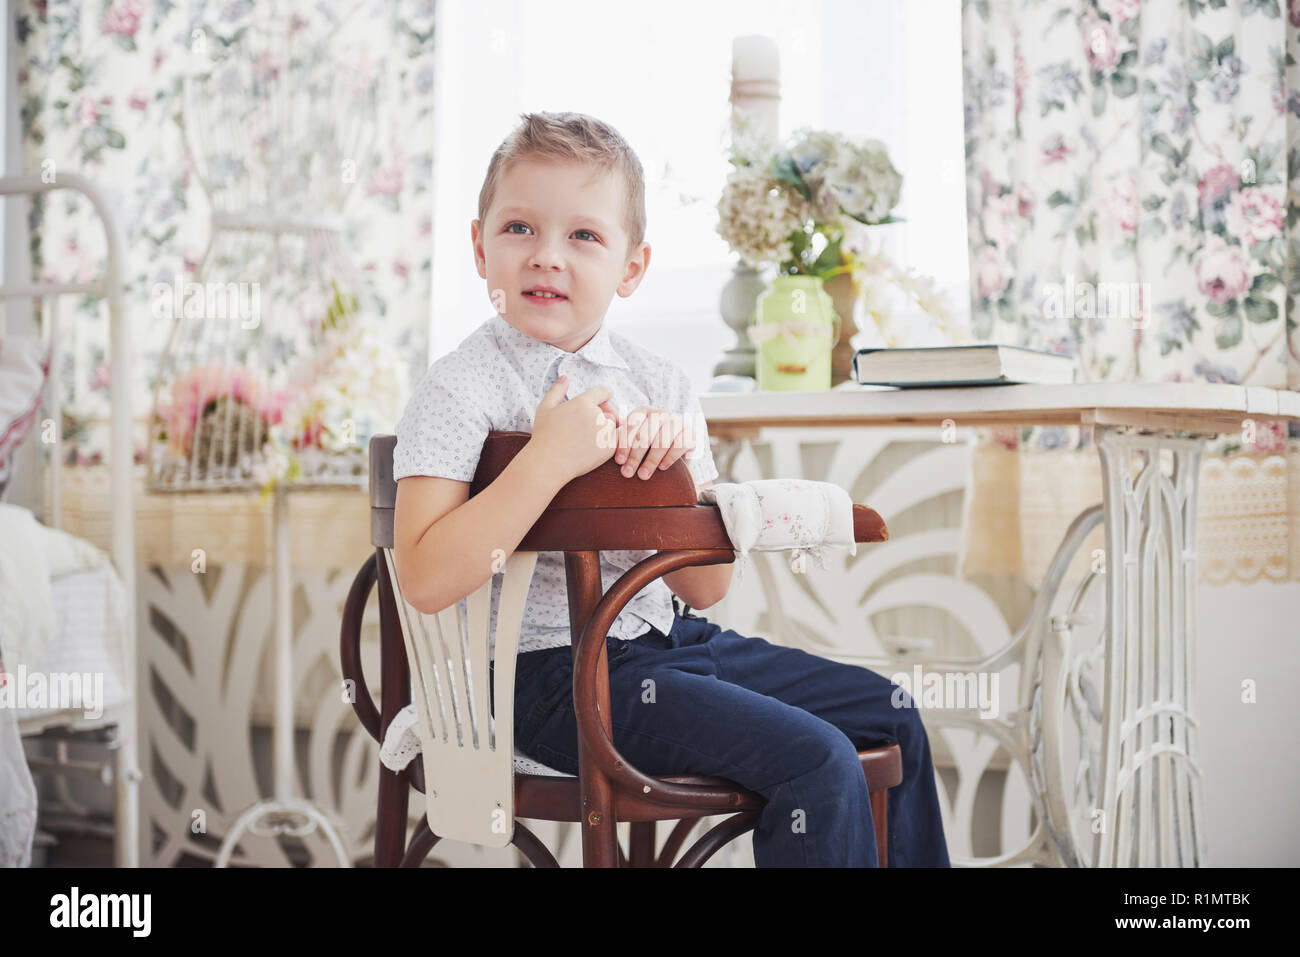 Kleiner Junge in blau Hose Jeans sitzt auf dem hölzernen Stuhl im Zimmer.  Macht Hausaufgaben. Zurück zur Schule Stockfotografie - Alamy